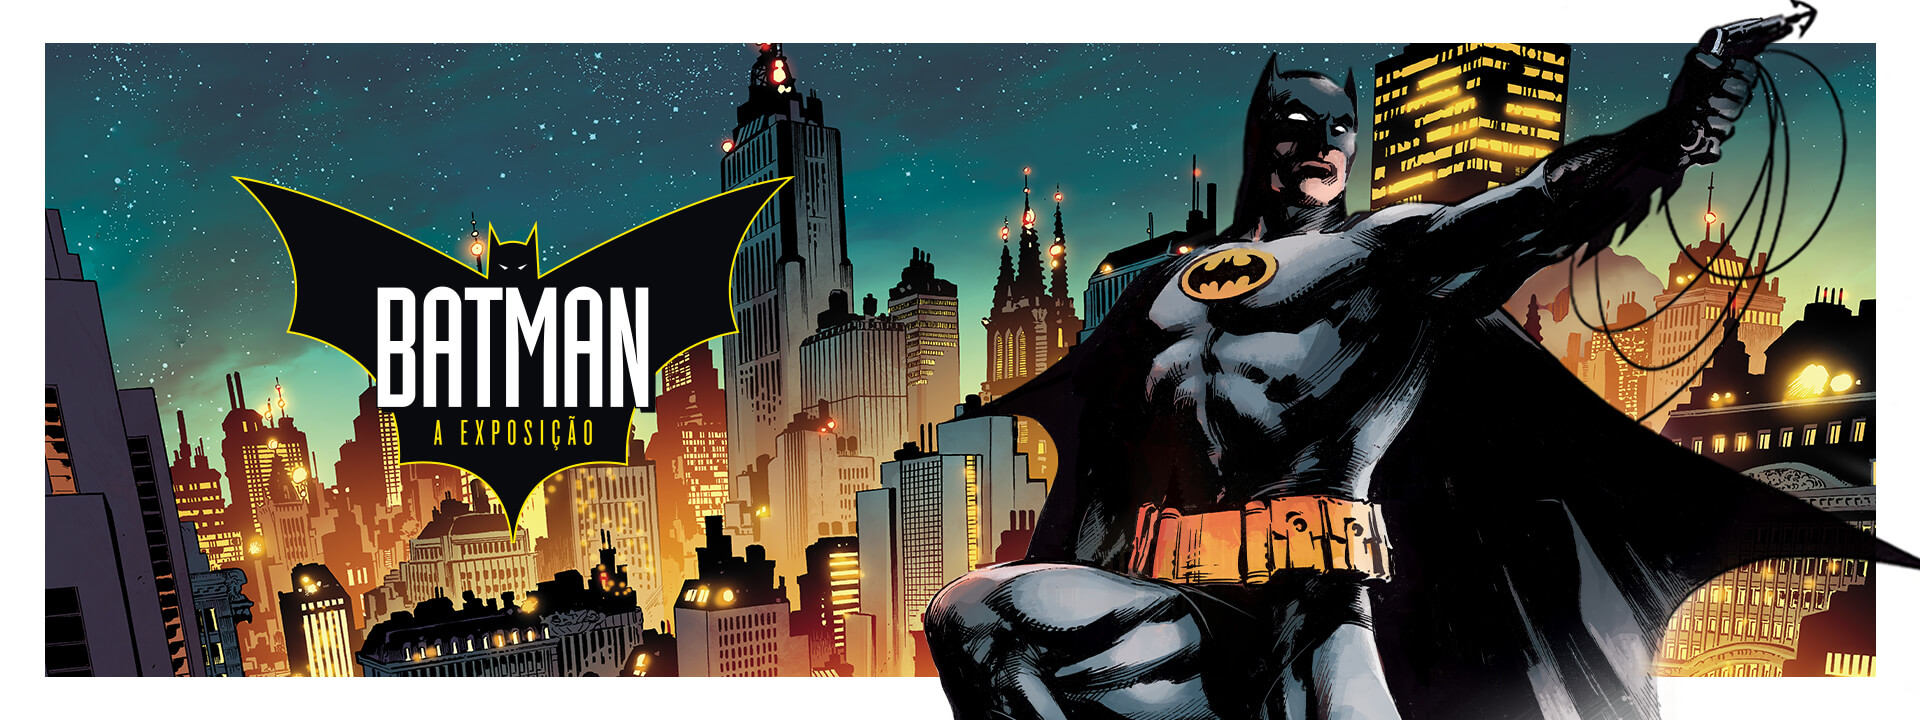 Batman – A exposição